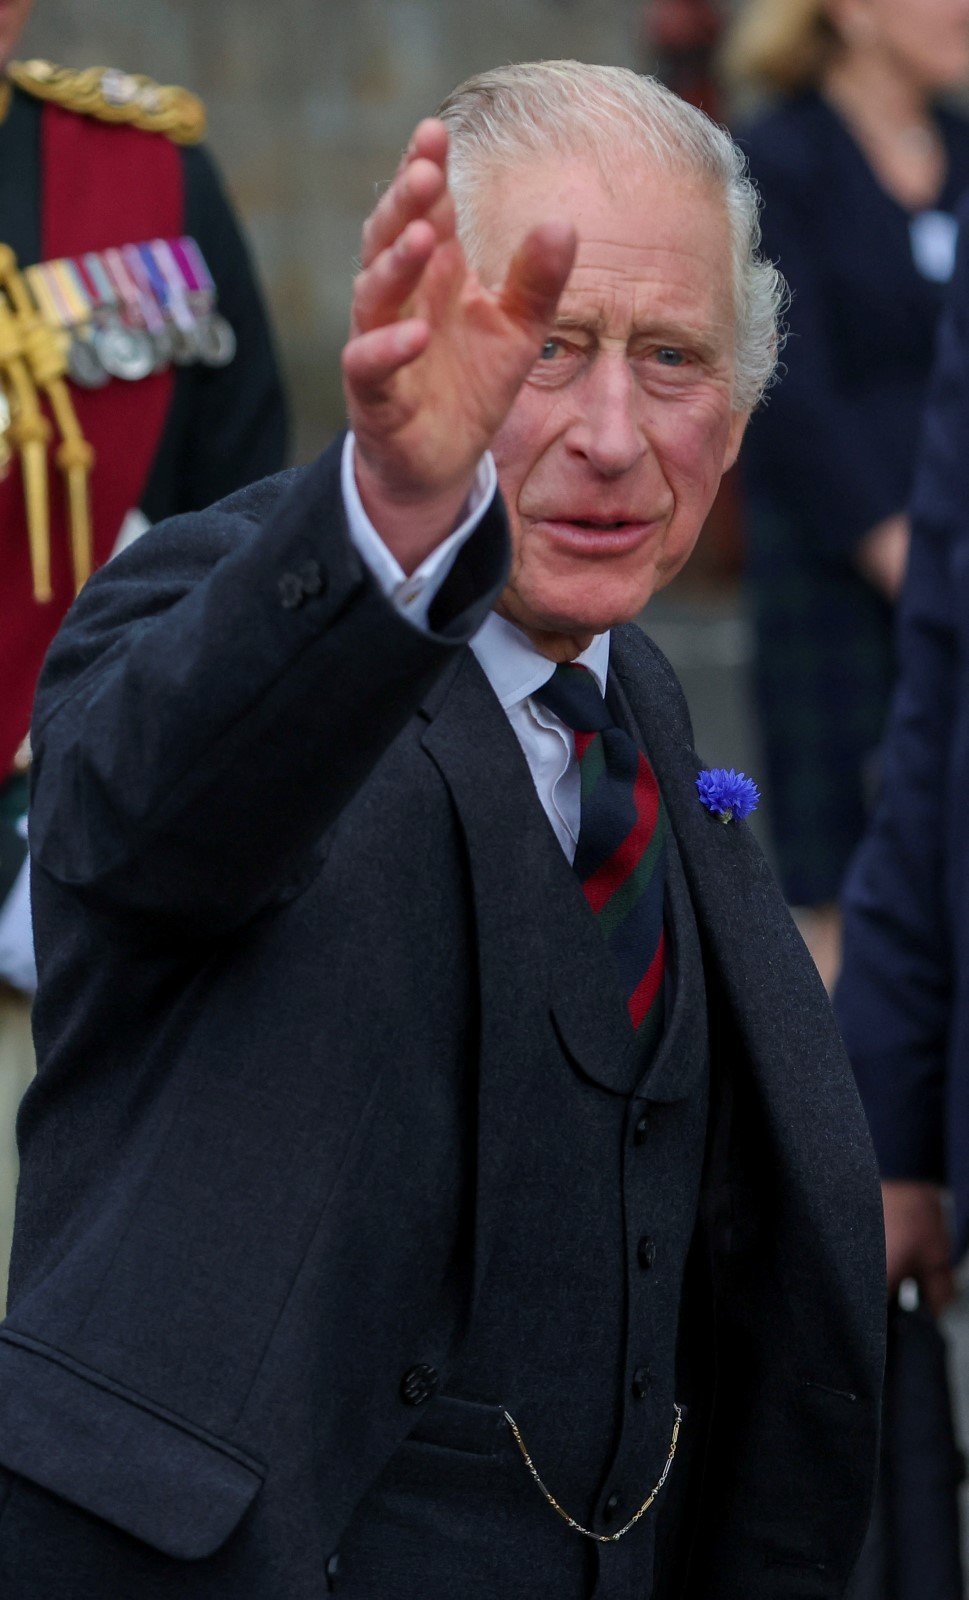 Král Karel III. navštívil veřejnost ve skotském městě Dunfermline